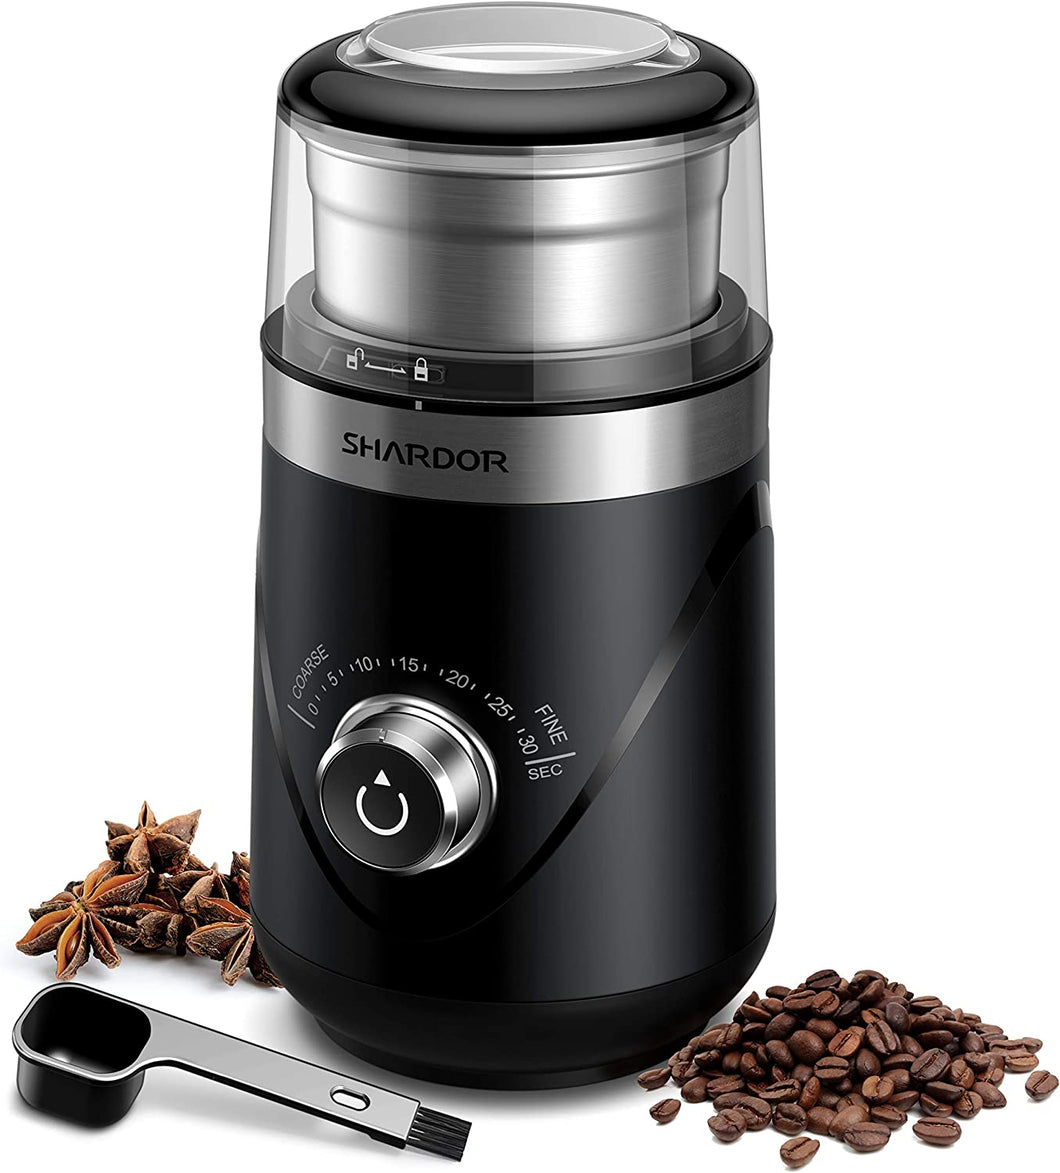 SHARDOR Adjustable Coffee Grinder Electric, Herb Grinder, Spice